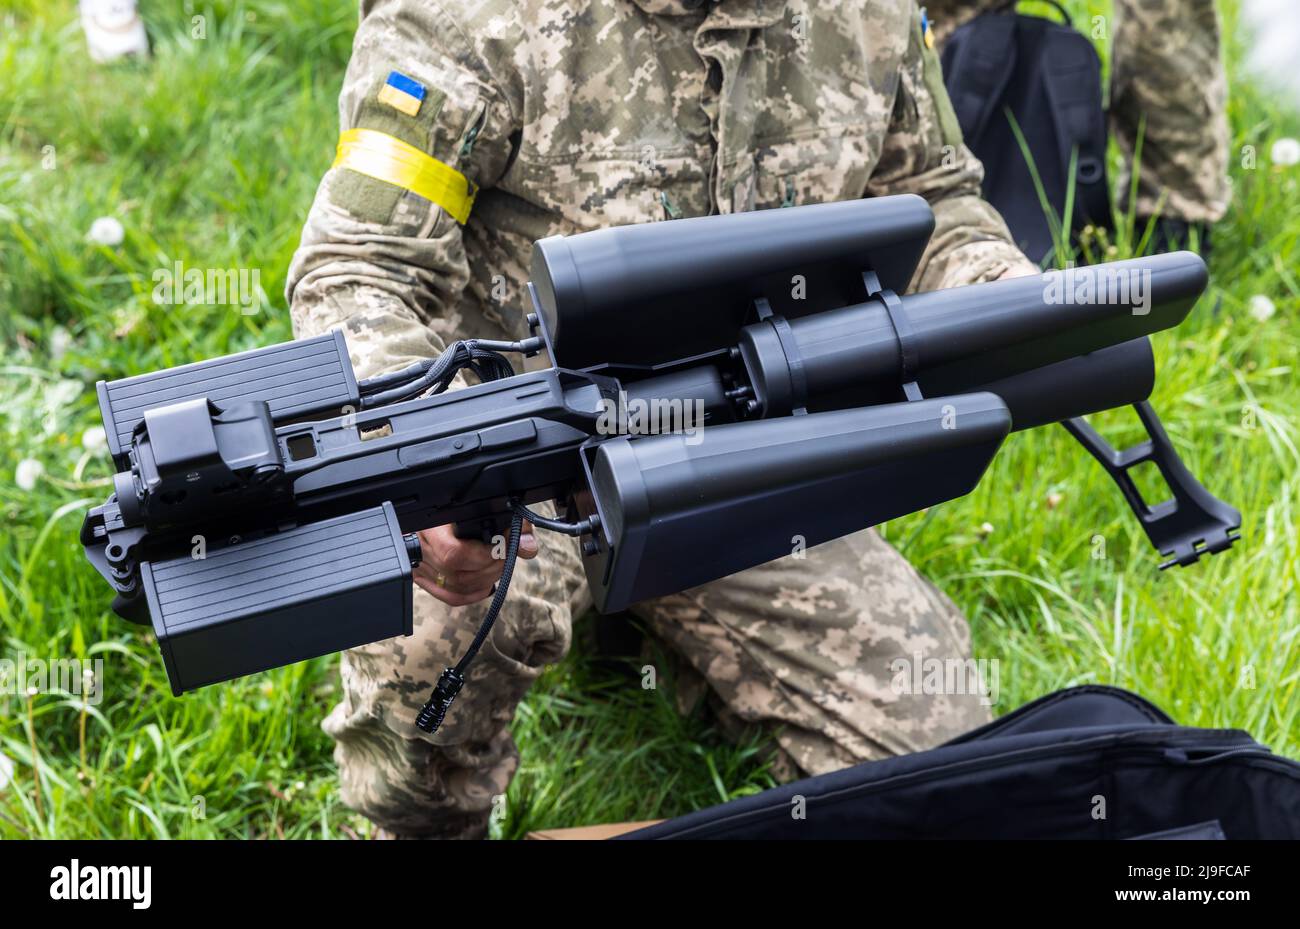 L'armée ukrainienne a vu se préparer à un tir de drones anti-drone à Kiev.  Fusil anti-drone acheté avec des fonds recueillis lors d'un concert de  charité à Toronto, Canada, dans le cadre